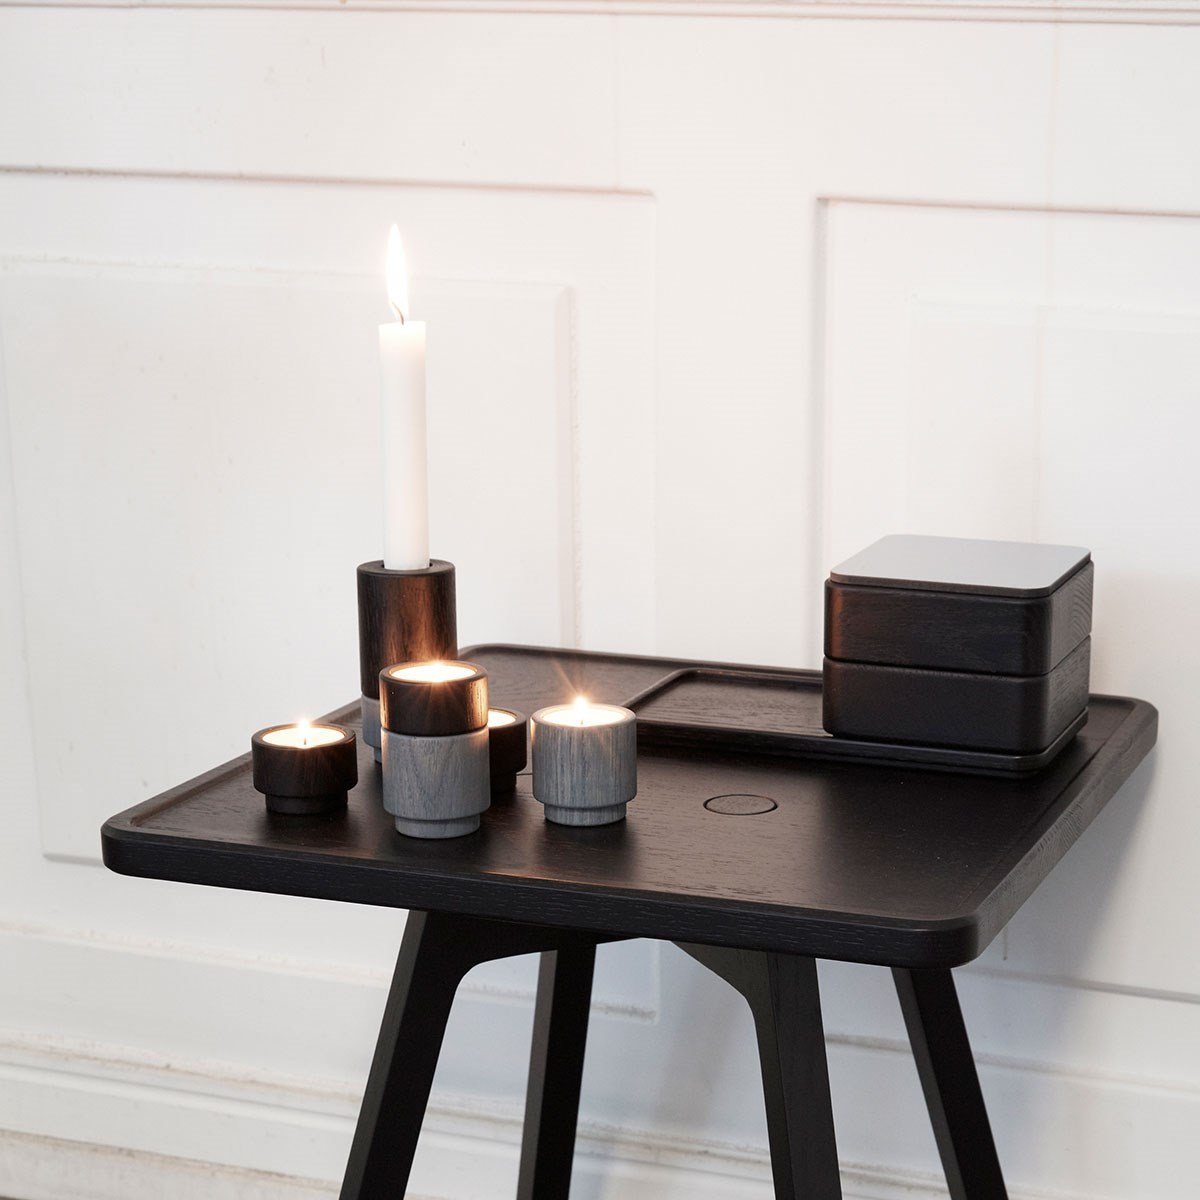 Andersen Furniture Create Me Tealight Holder Ocean Grey, 3 cm